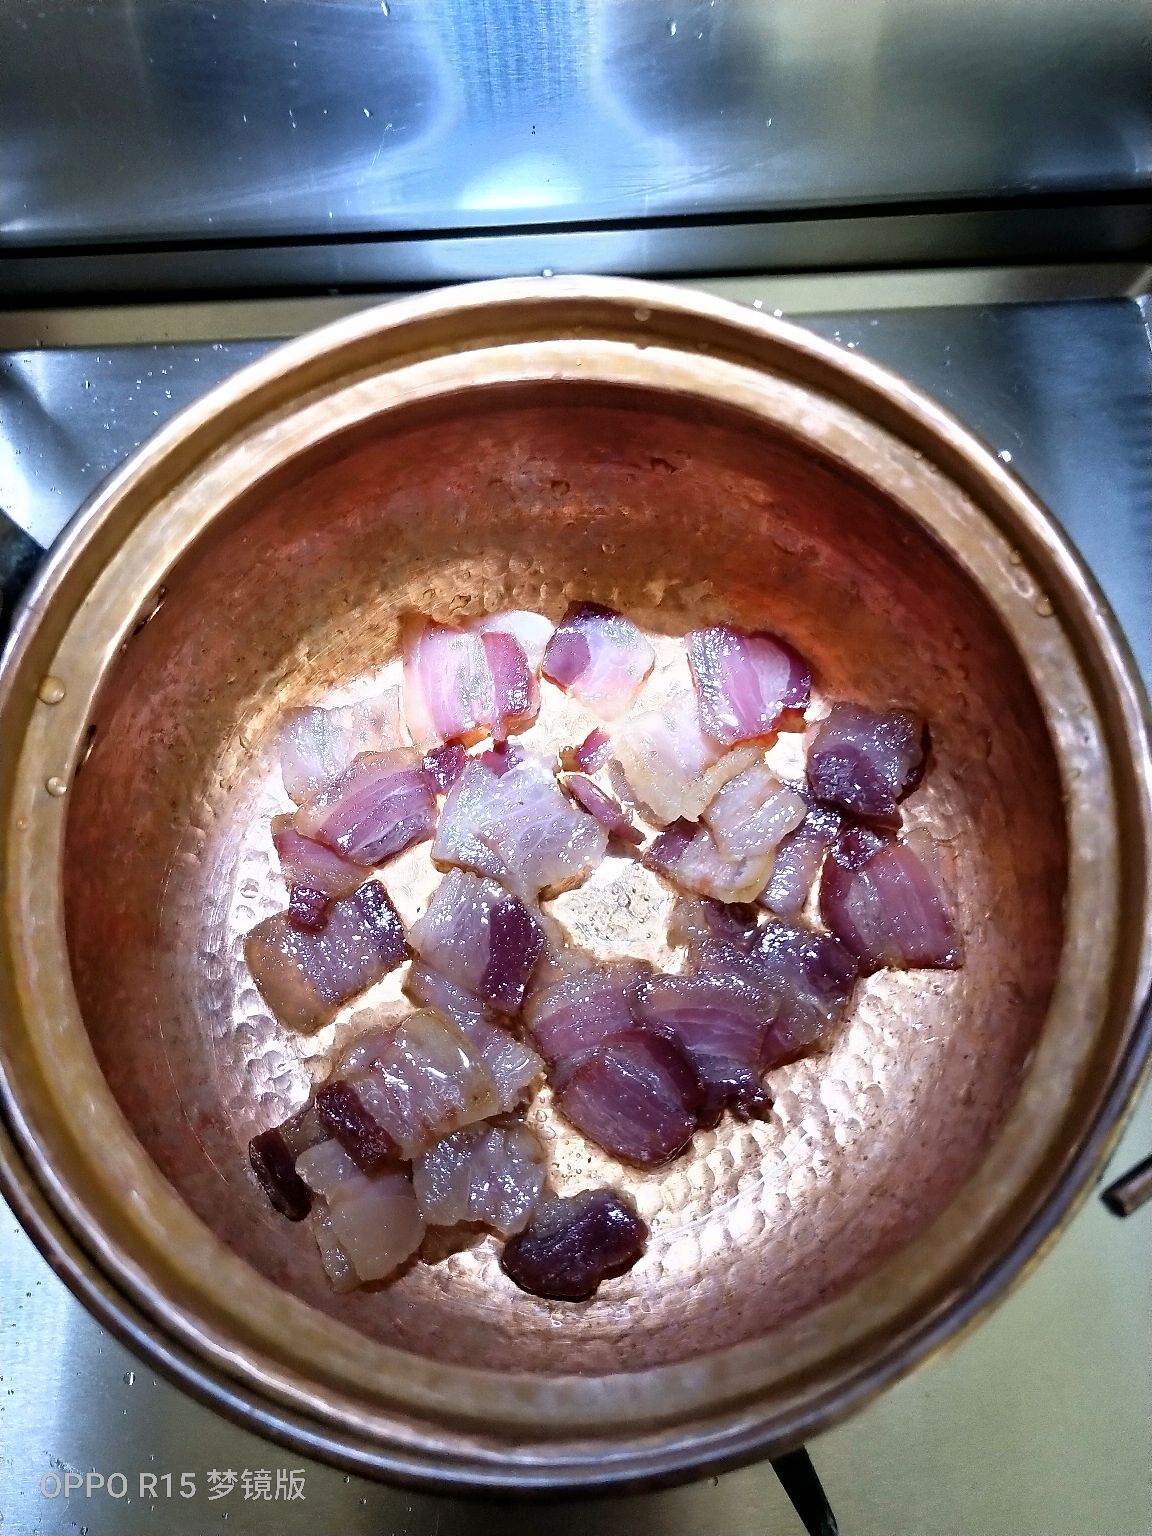 铜锅洋芋饭图片-图库-五毛网